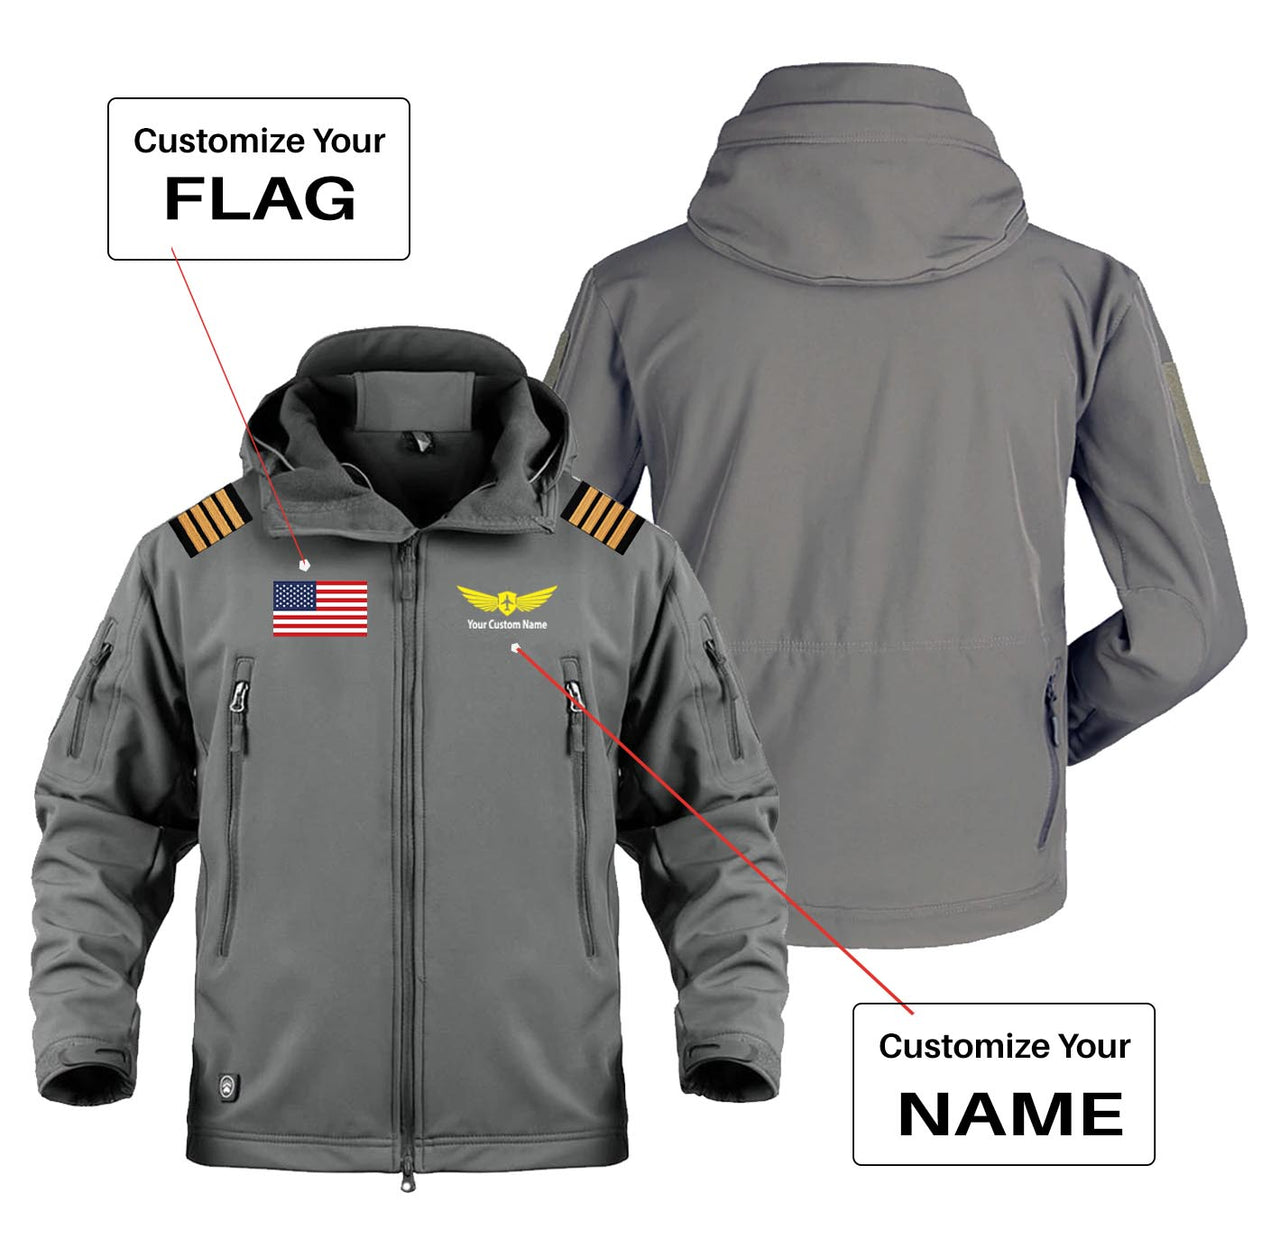 Custom Flag & Name with EPAULETTES (Badge 2) Military Pilot Jackets